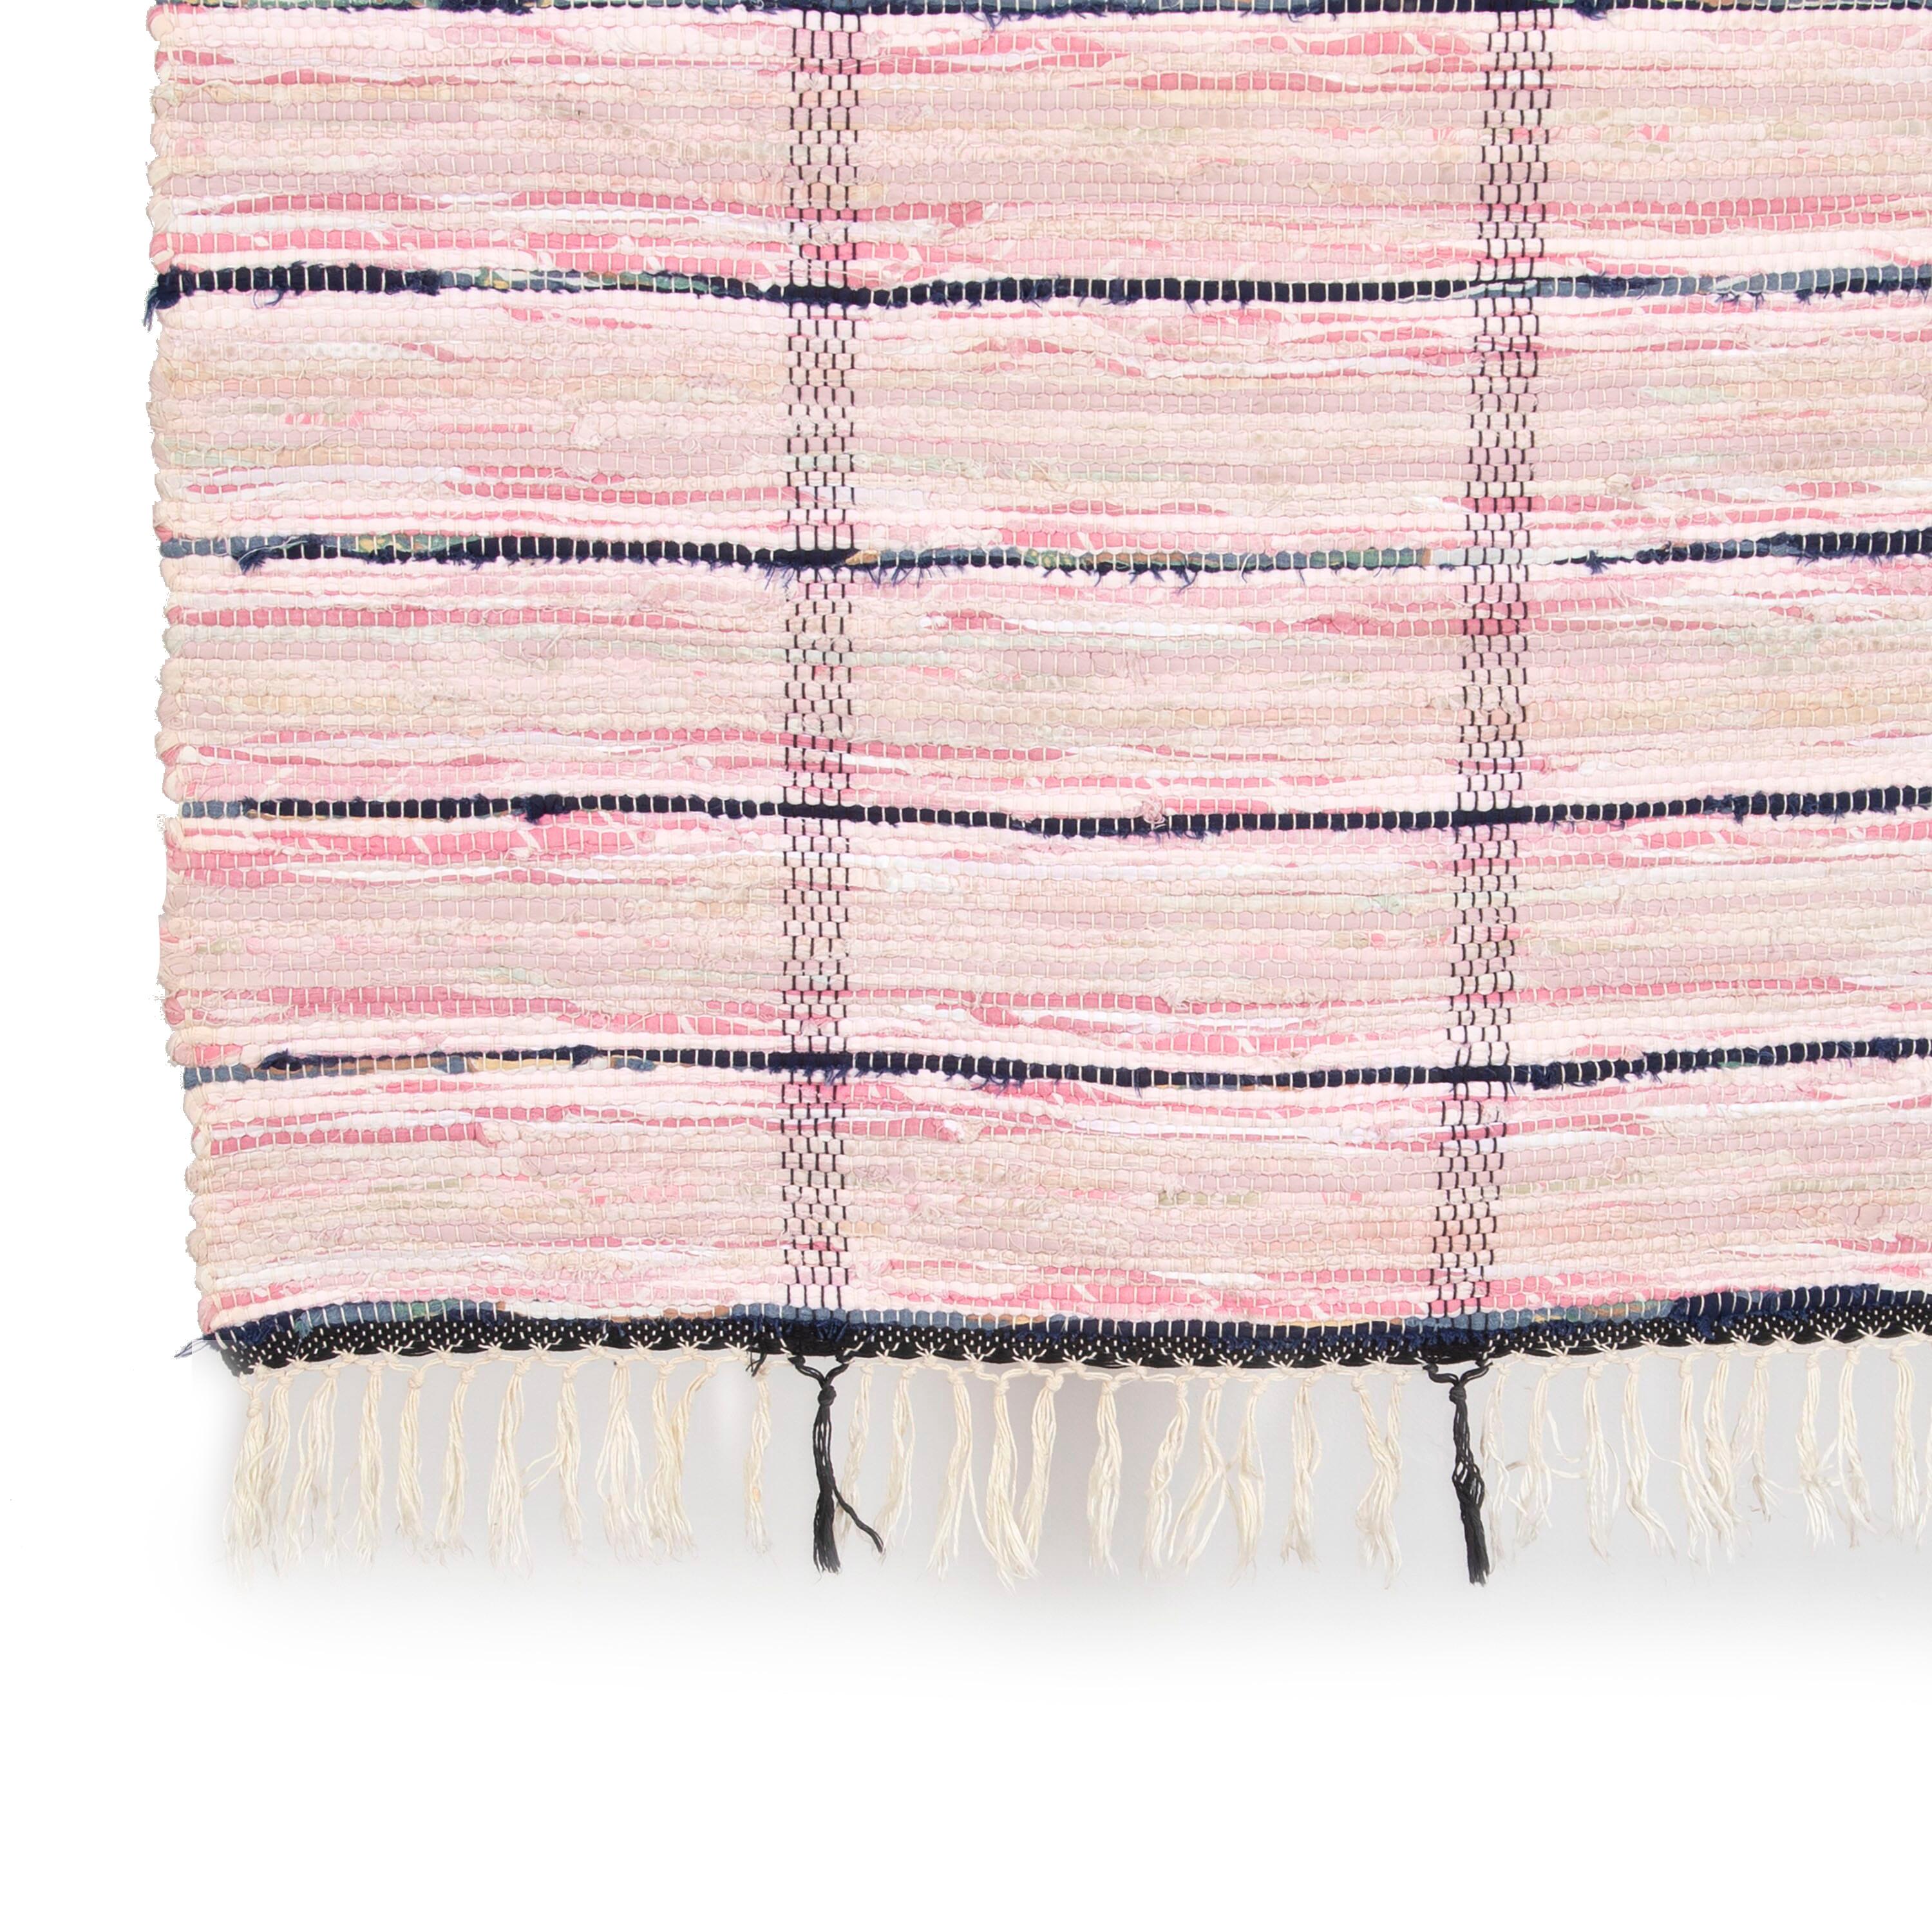 Traditioneller schwedischer Flickenteppich in Rosa- und Ecru-Tönen mit einem breiten Streifenmuster. Dieser Teppich hat lange Proportionen, ideal für den Einsatz in einem Flur oder Korridor. Es weist ein dichtes Muster in einer Reihe von Farben auf,